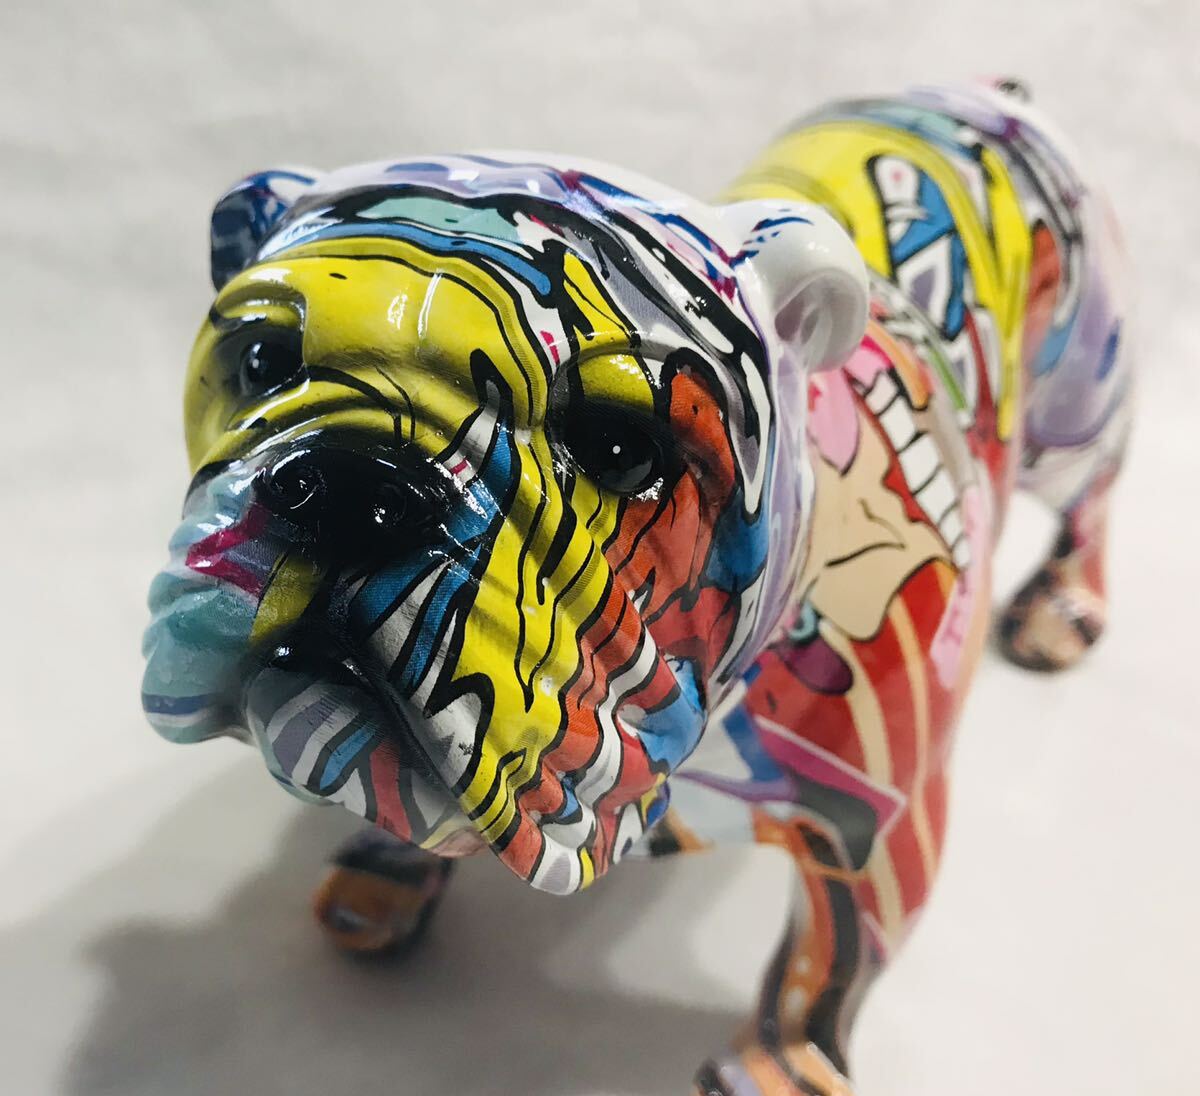 カラフルなフレンチブルドッグ像 創造的なグラフィティアート ブルドッグの置物 樹脂クラフト 動物の彫刻 子犬の置物 モダンな置物の画像2